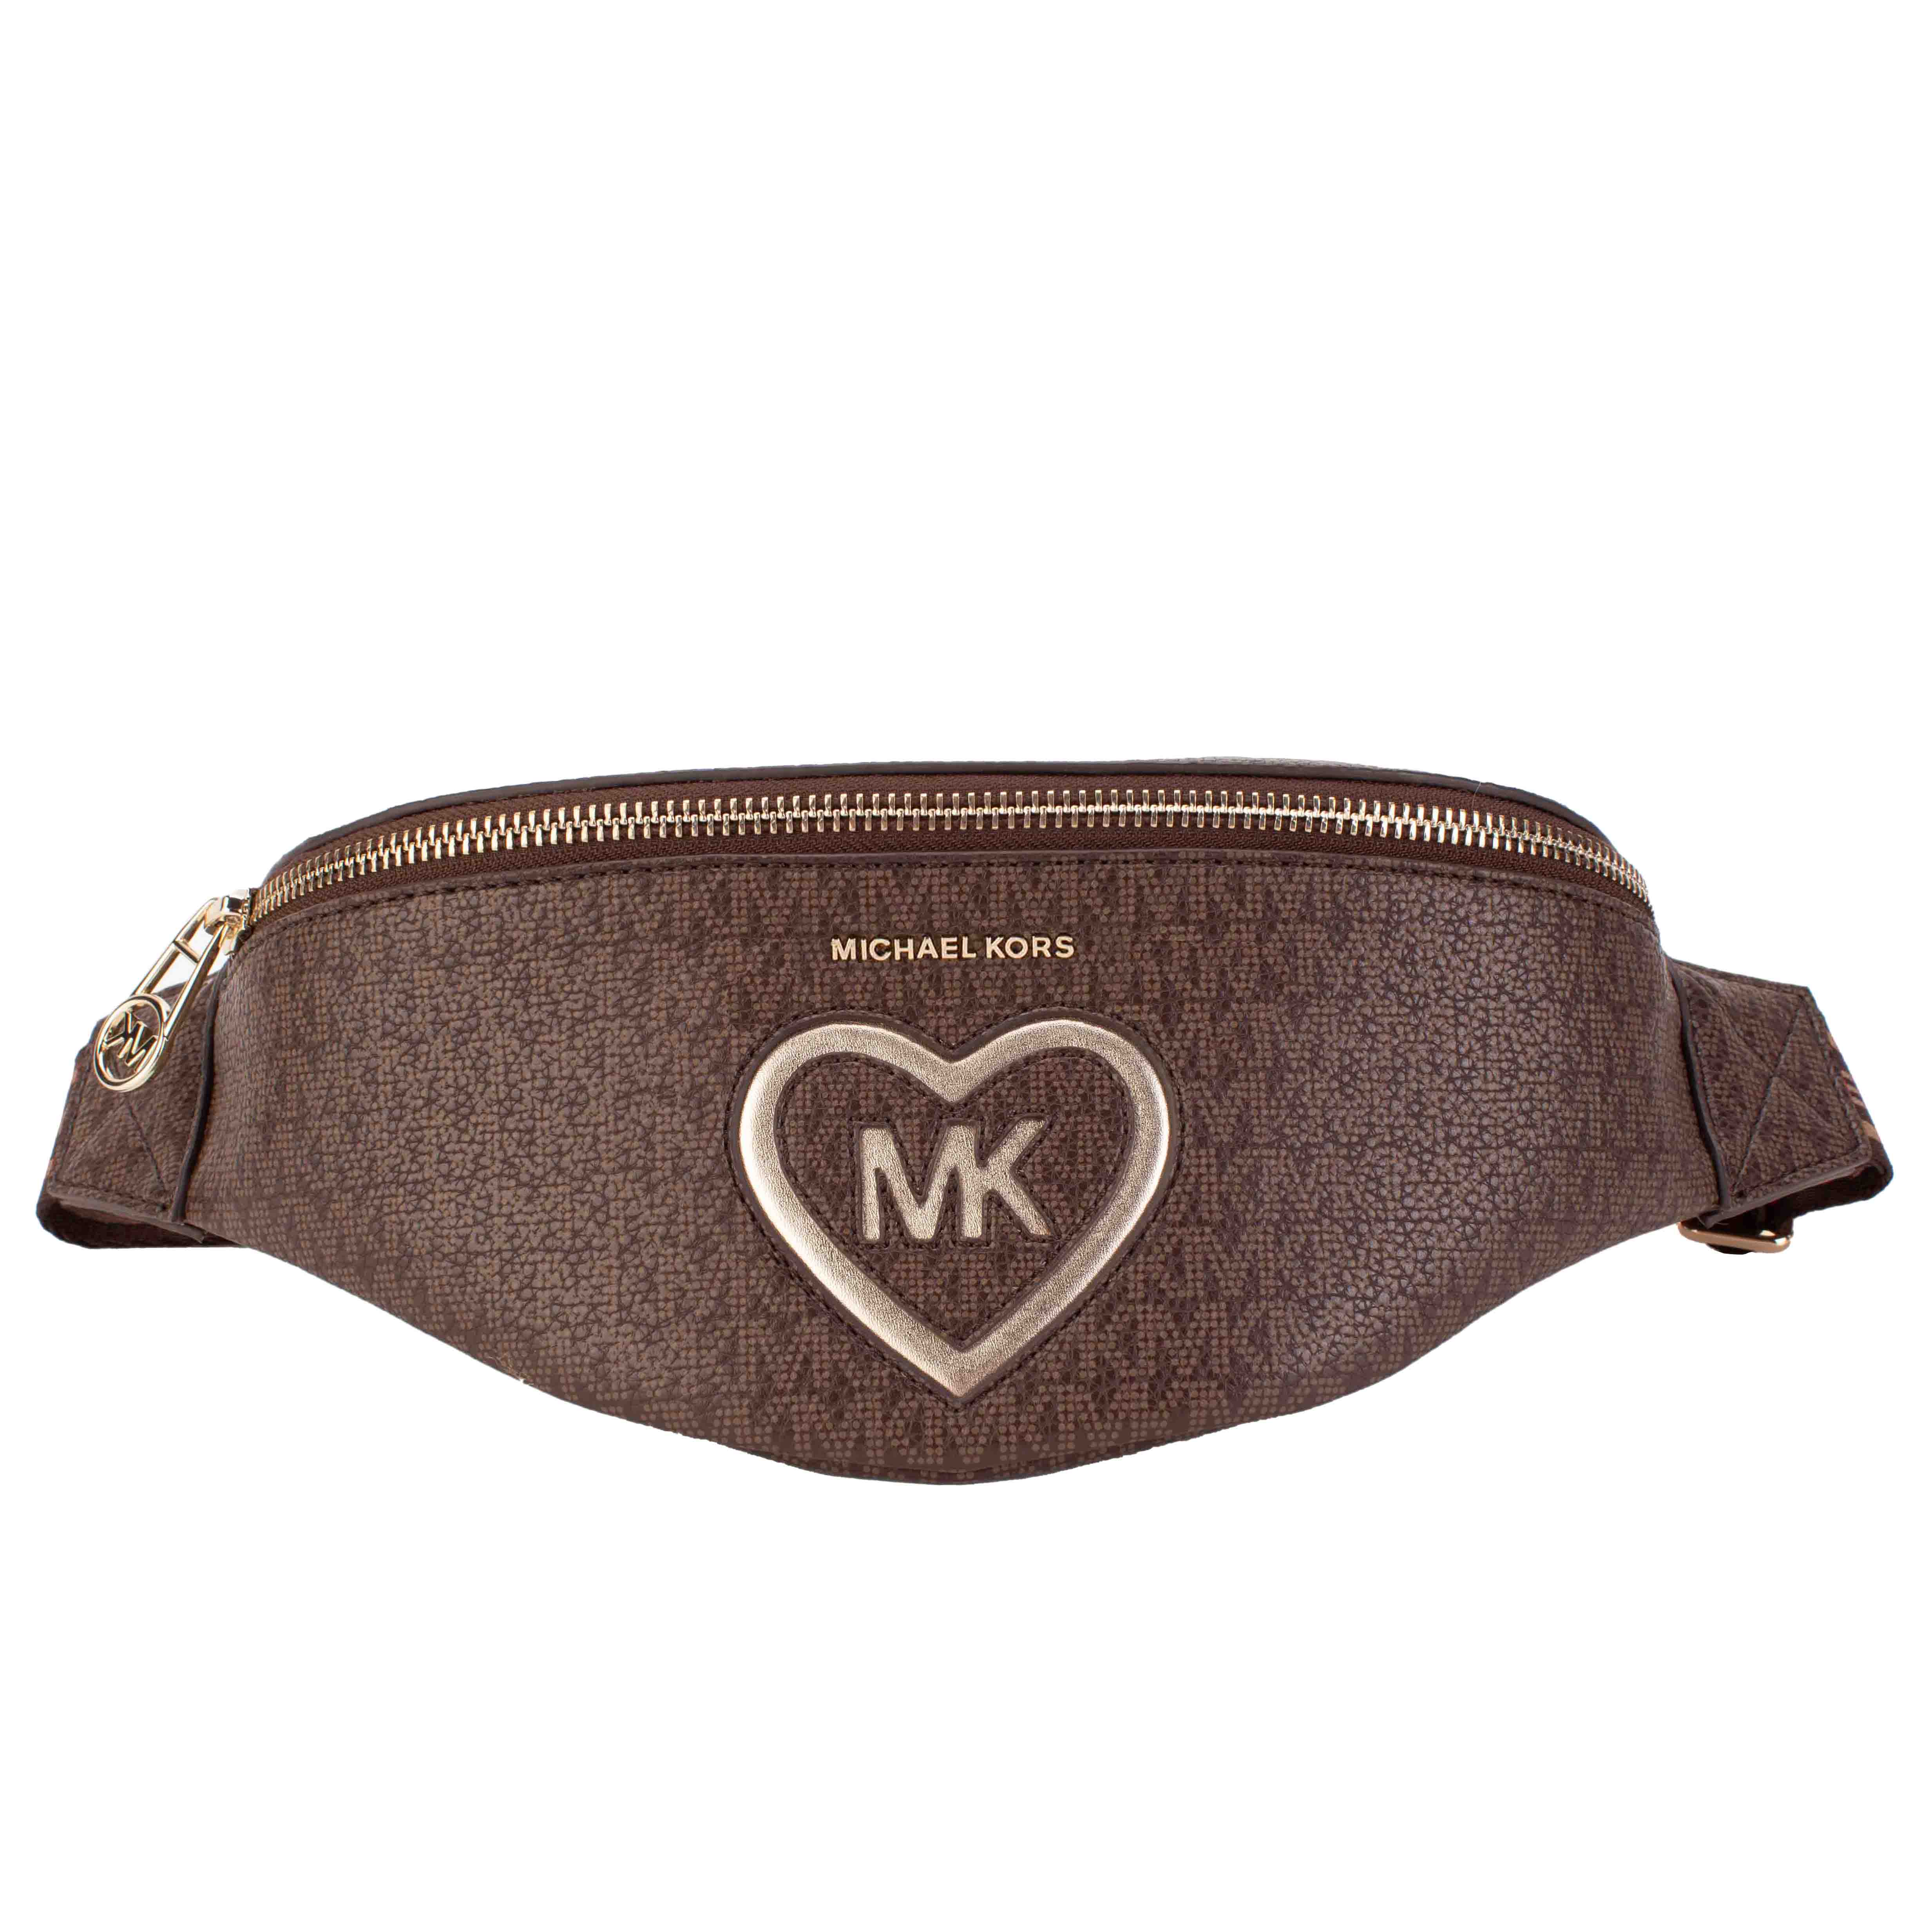 Coated belt bag MICHAEL KORS for GIRL